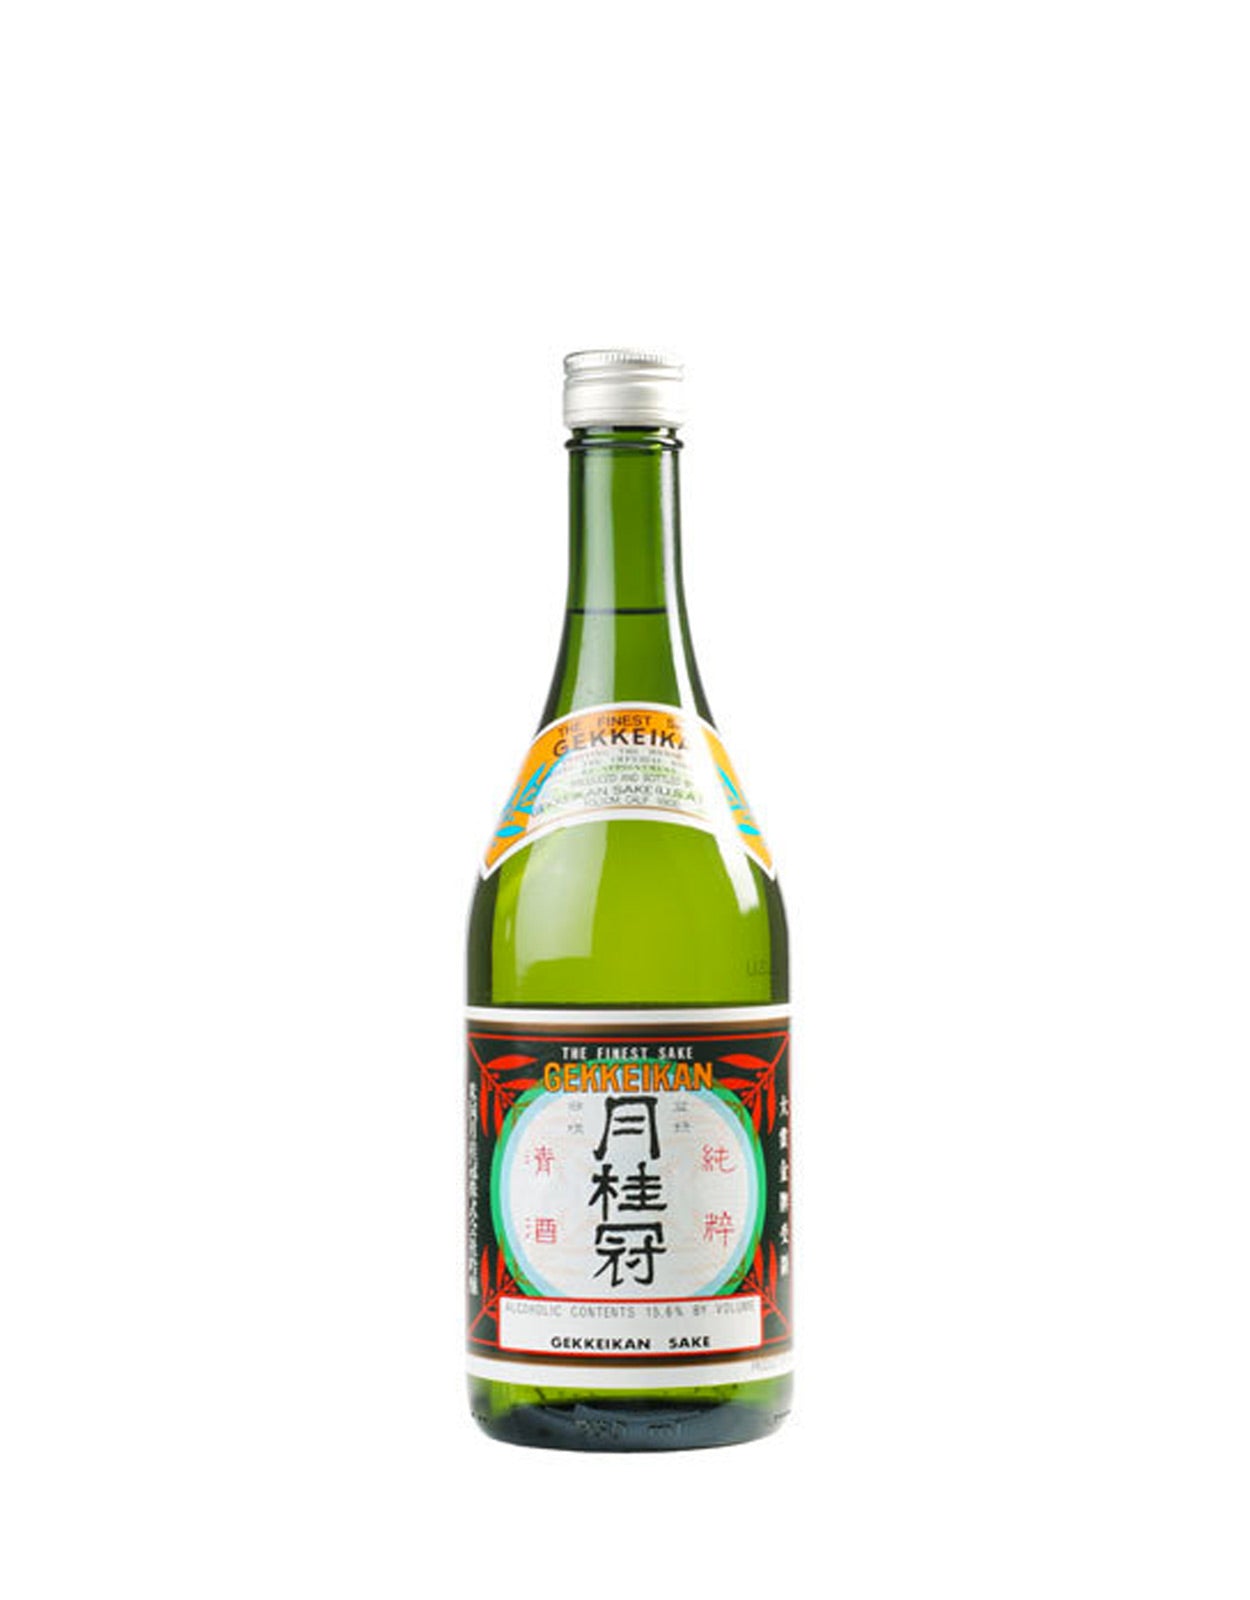 Gekkeikan Traditional Junmai Sake - 375 ml